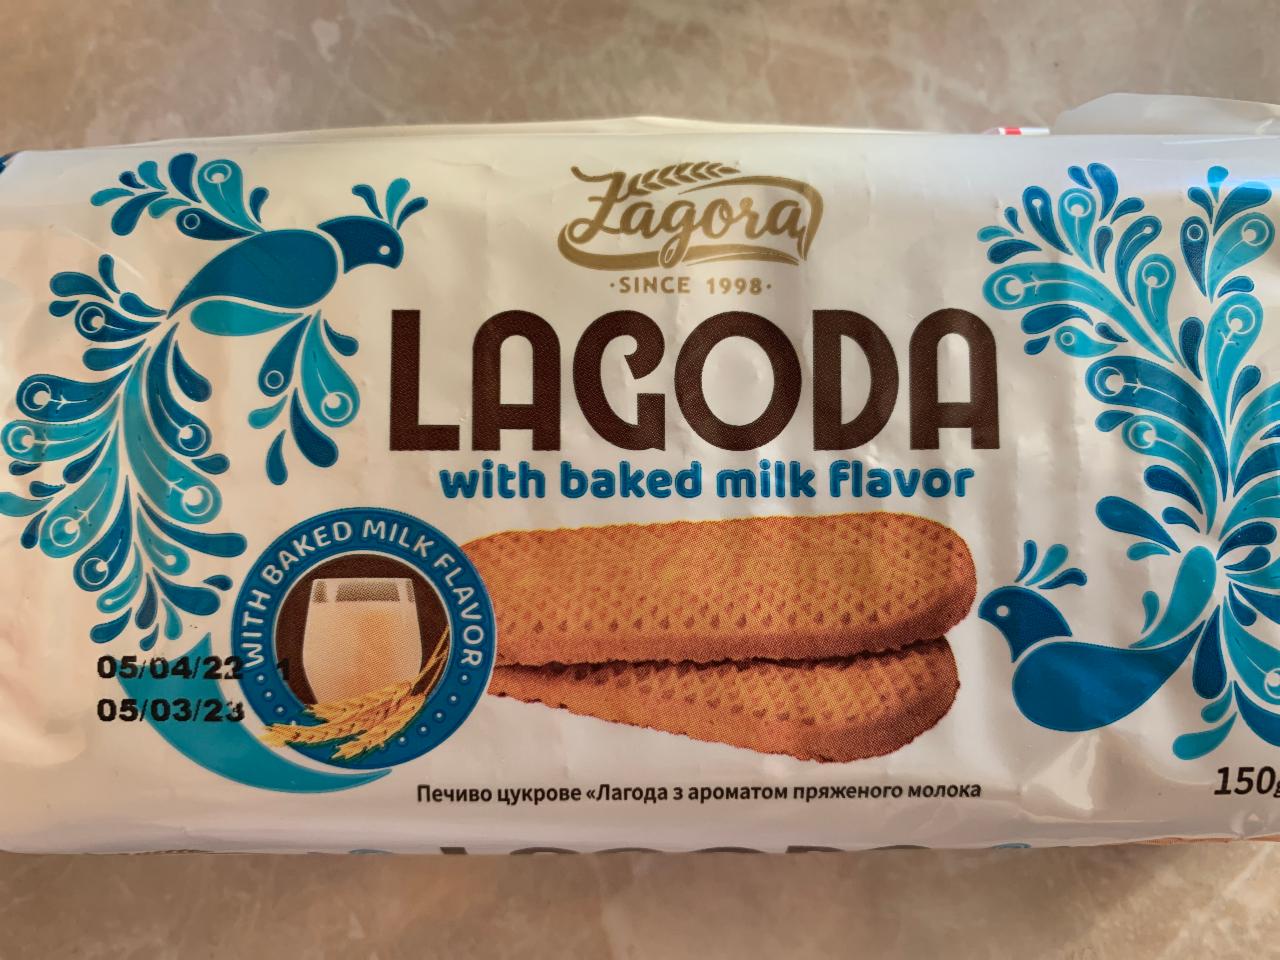 Фото - Печенье сахарное с ароматом топленого молока Lagoda Zagora